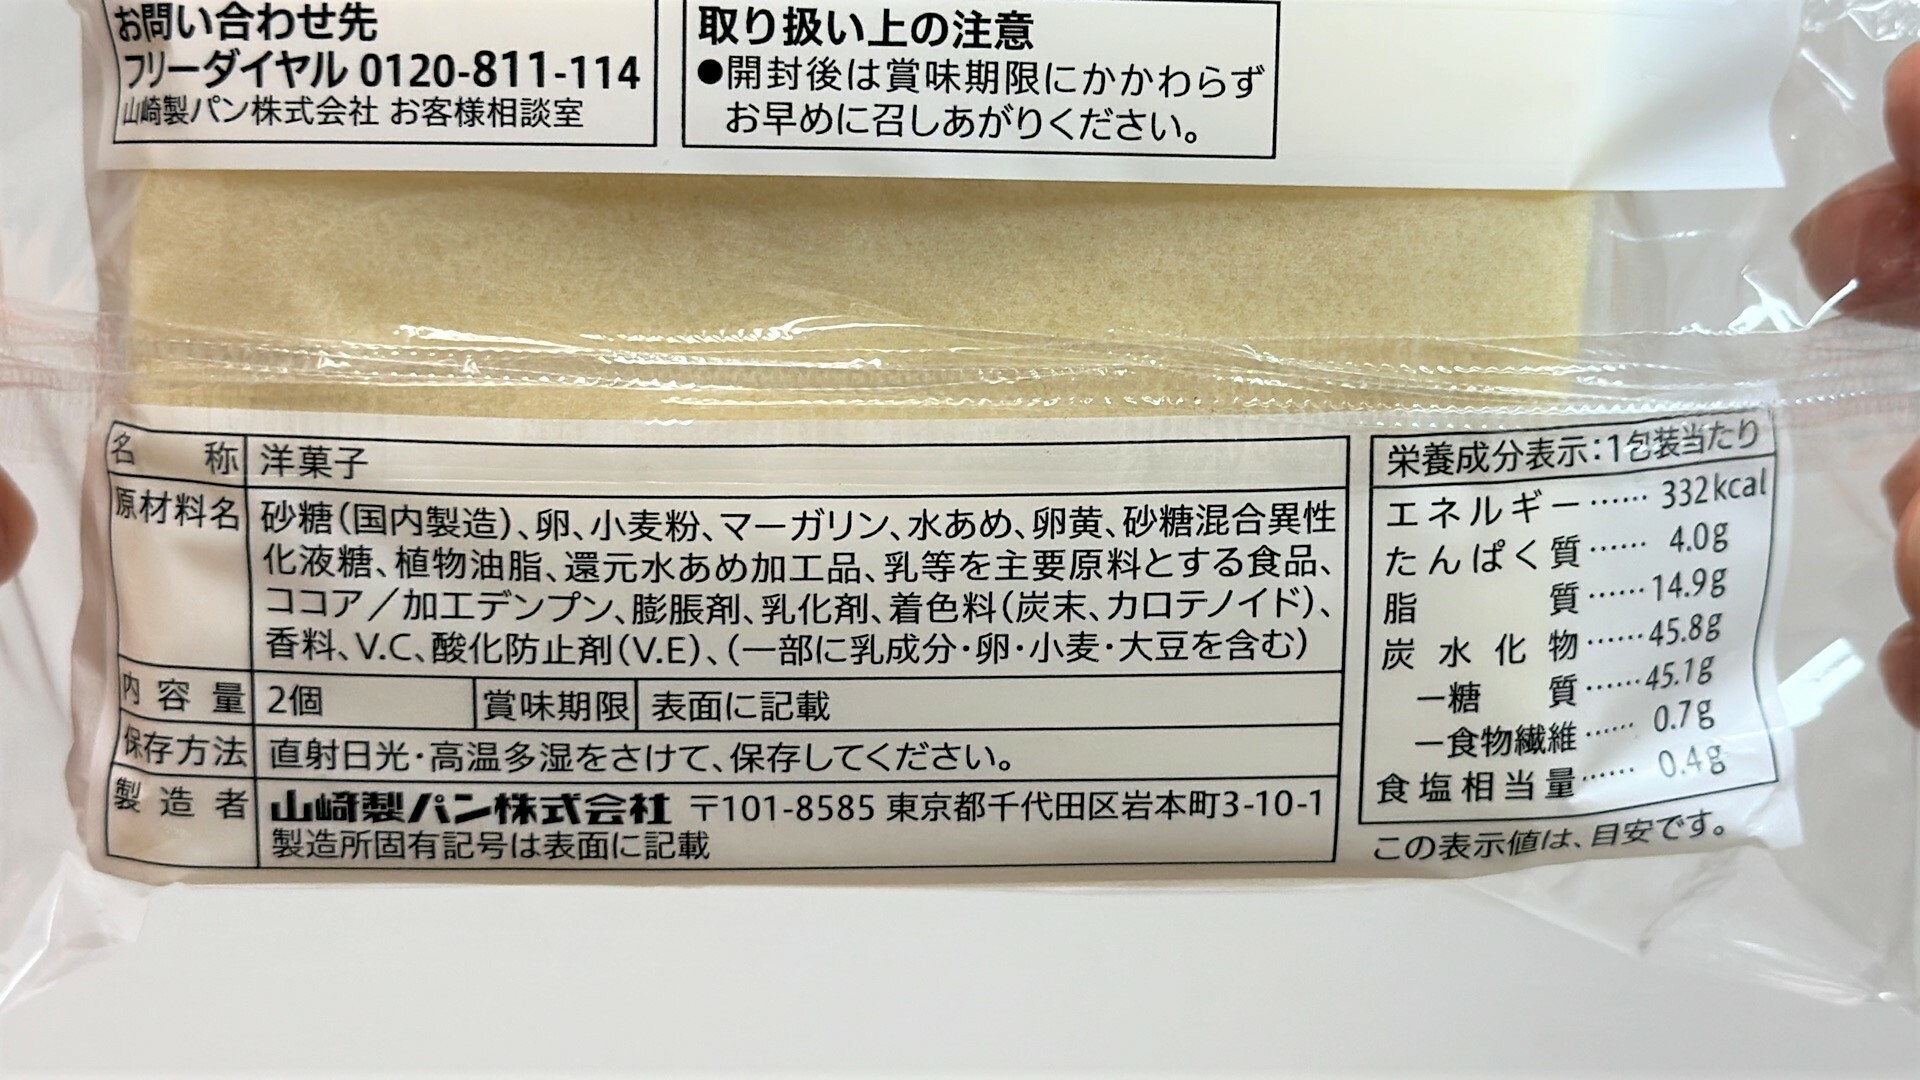 バニラクリームサンドの原材料名と栄養成分表示